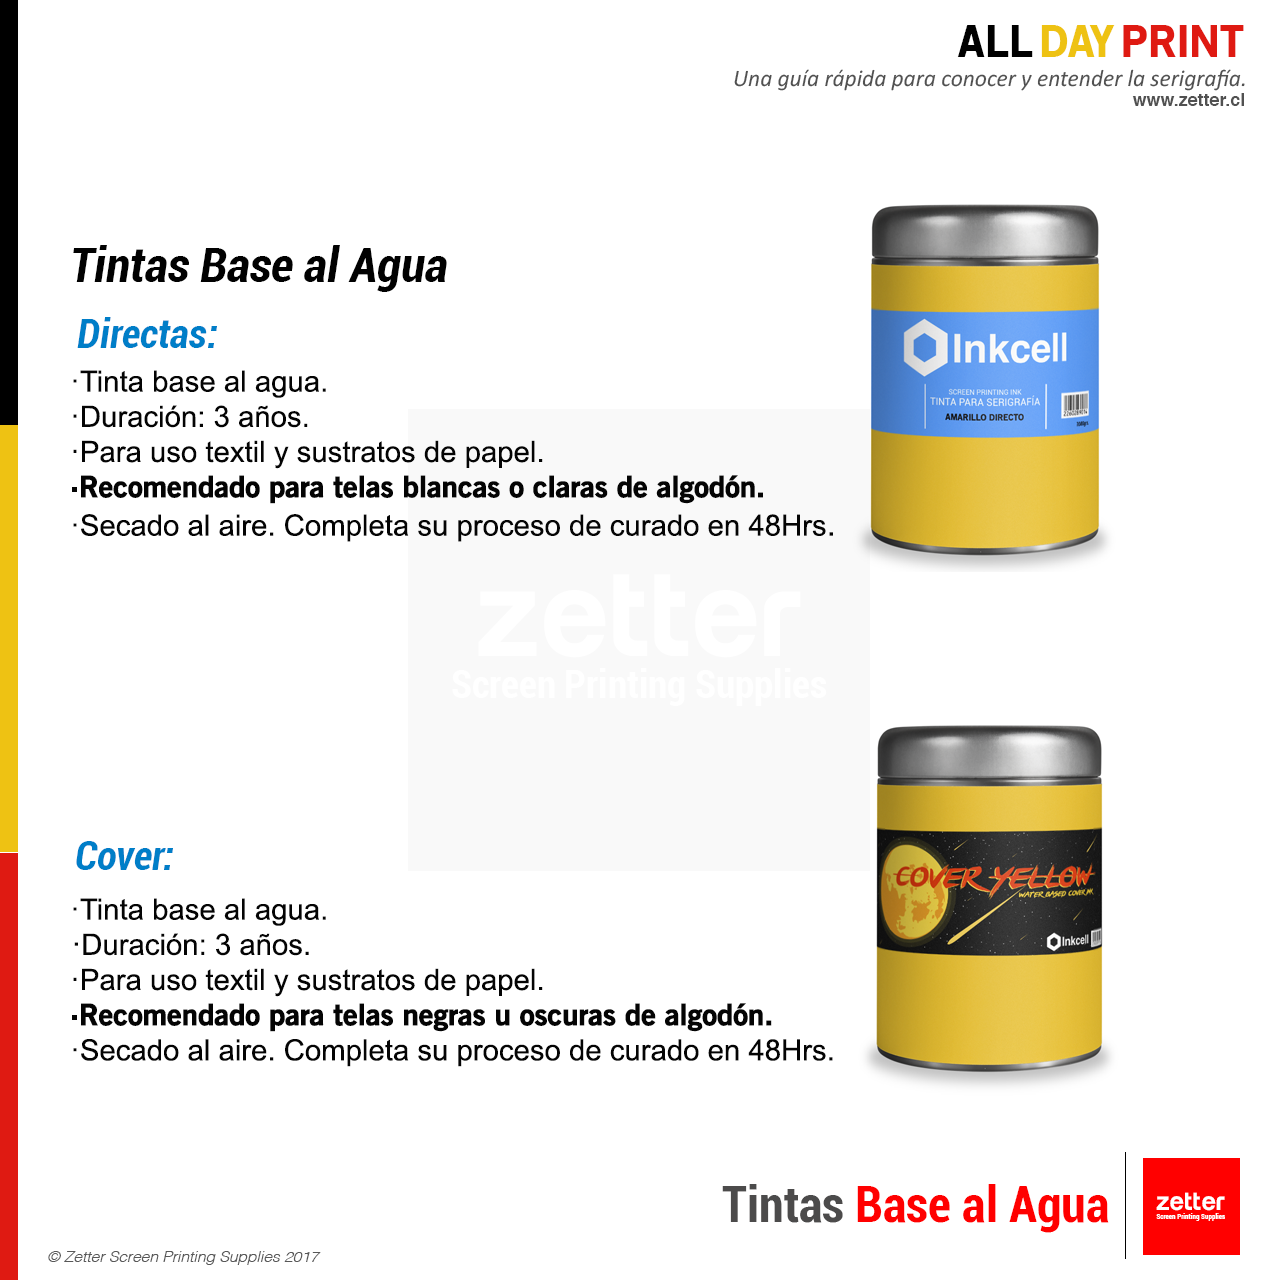 Tintas Base al Agua Directa / Cover